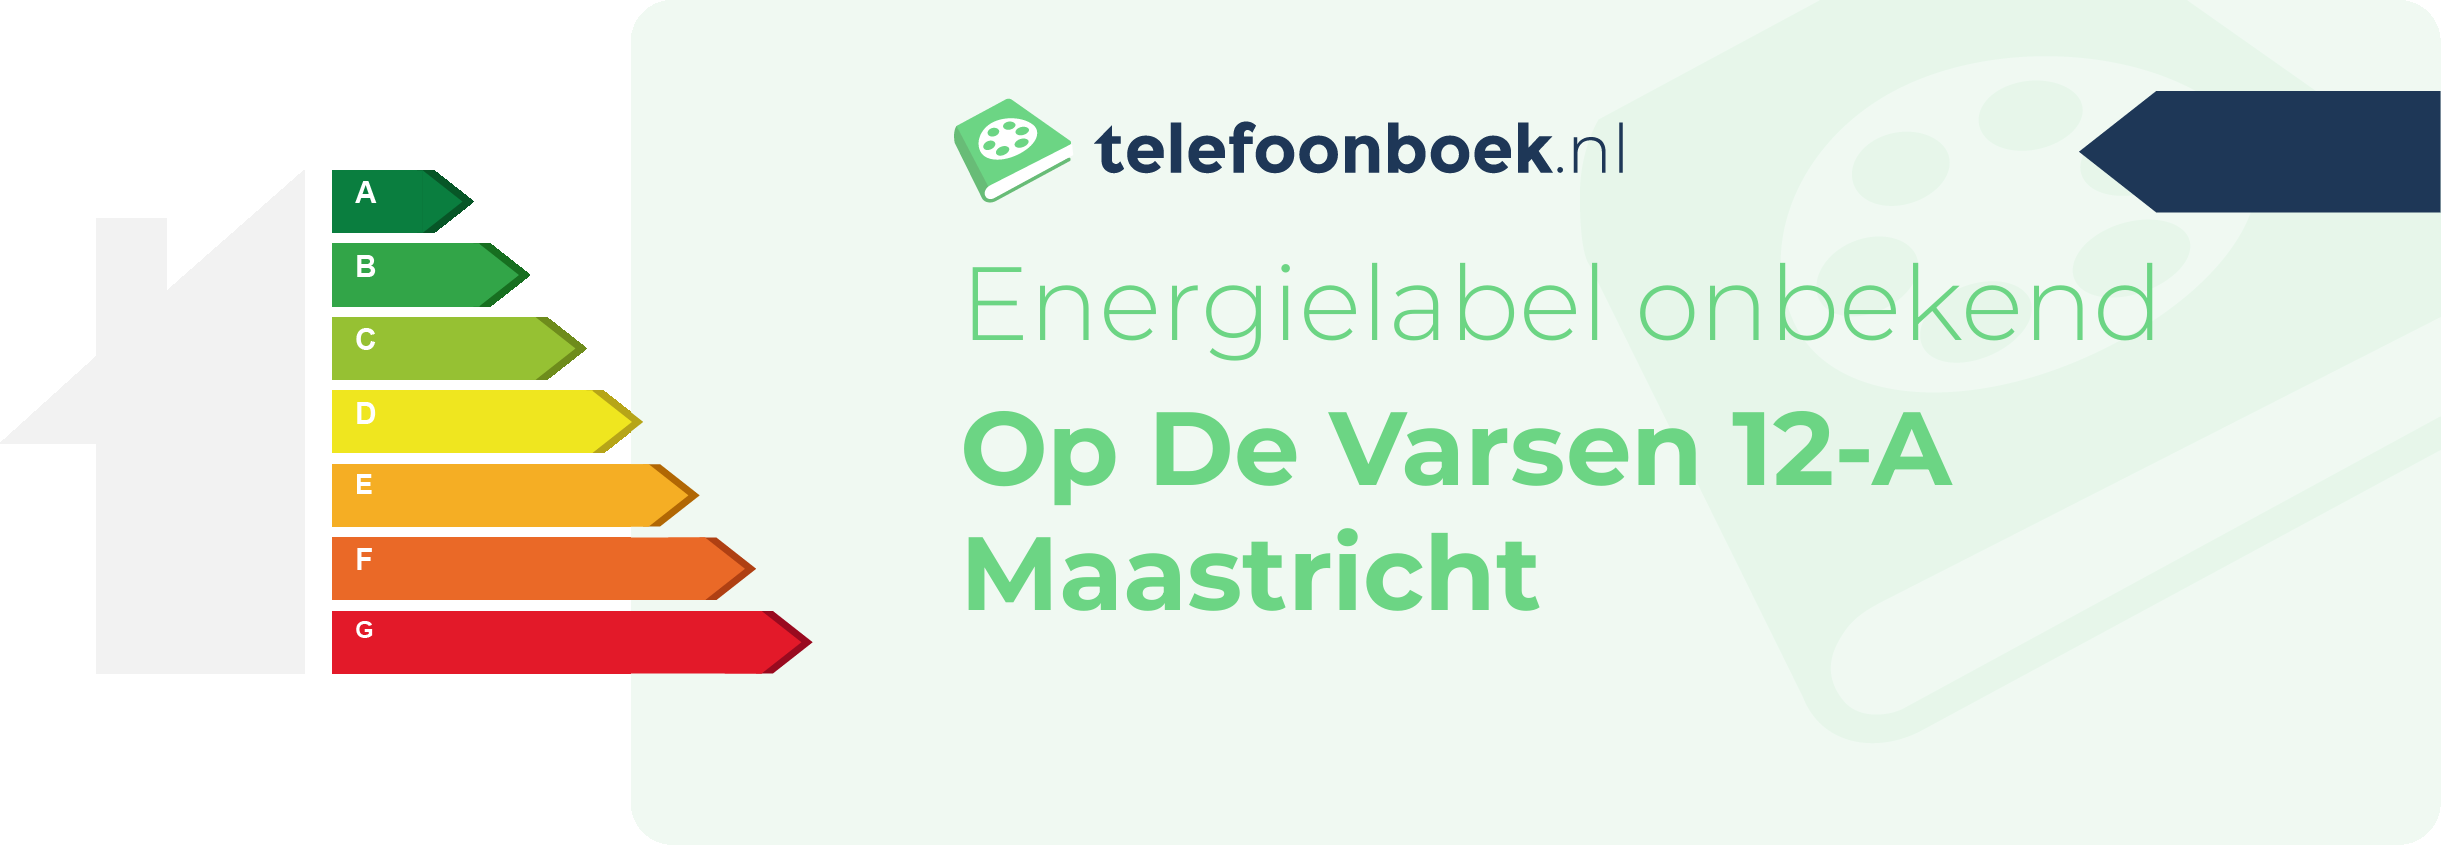 Energielabel Op De Varsen 12-A Maastricht